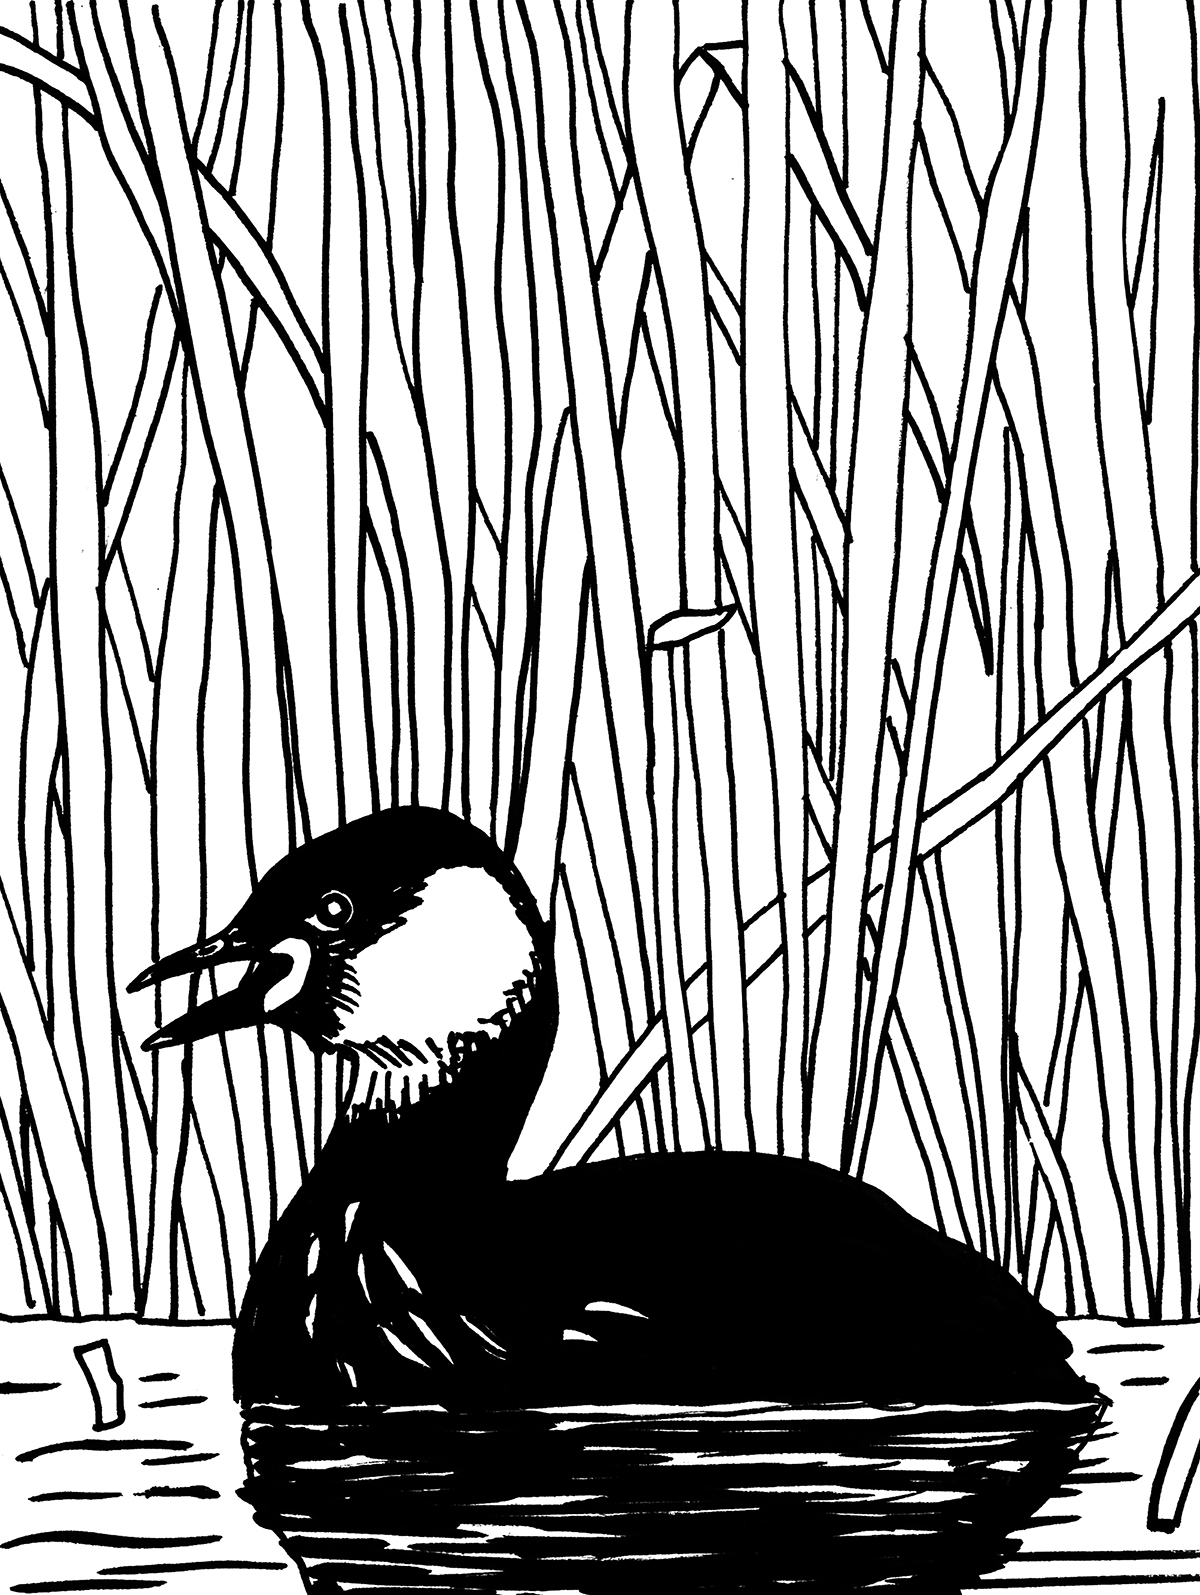 Ptak o ciemnym umaszczeniu z jasną plamą z boku głowy i otwartym dziobem, unosi się na wodzie na tle wysokich trzcin.